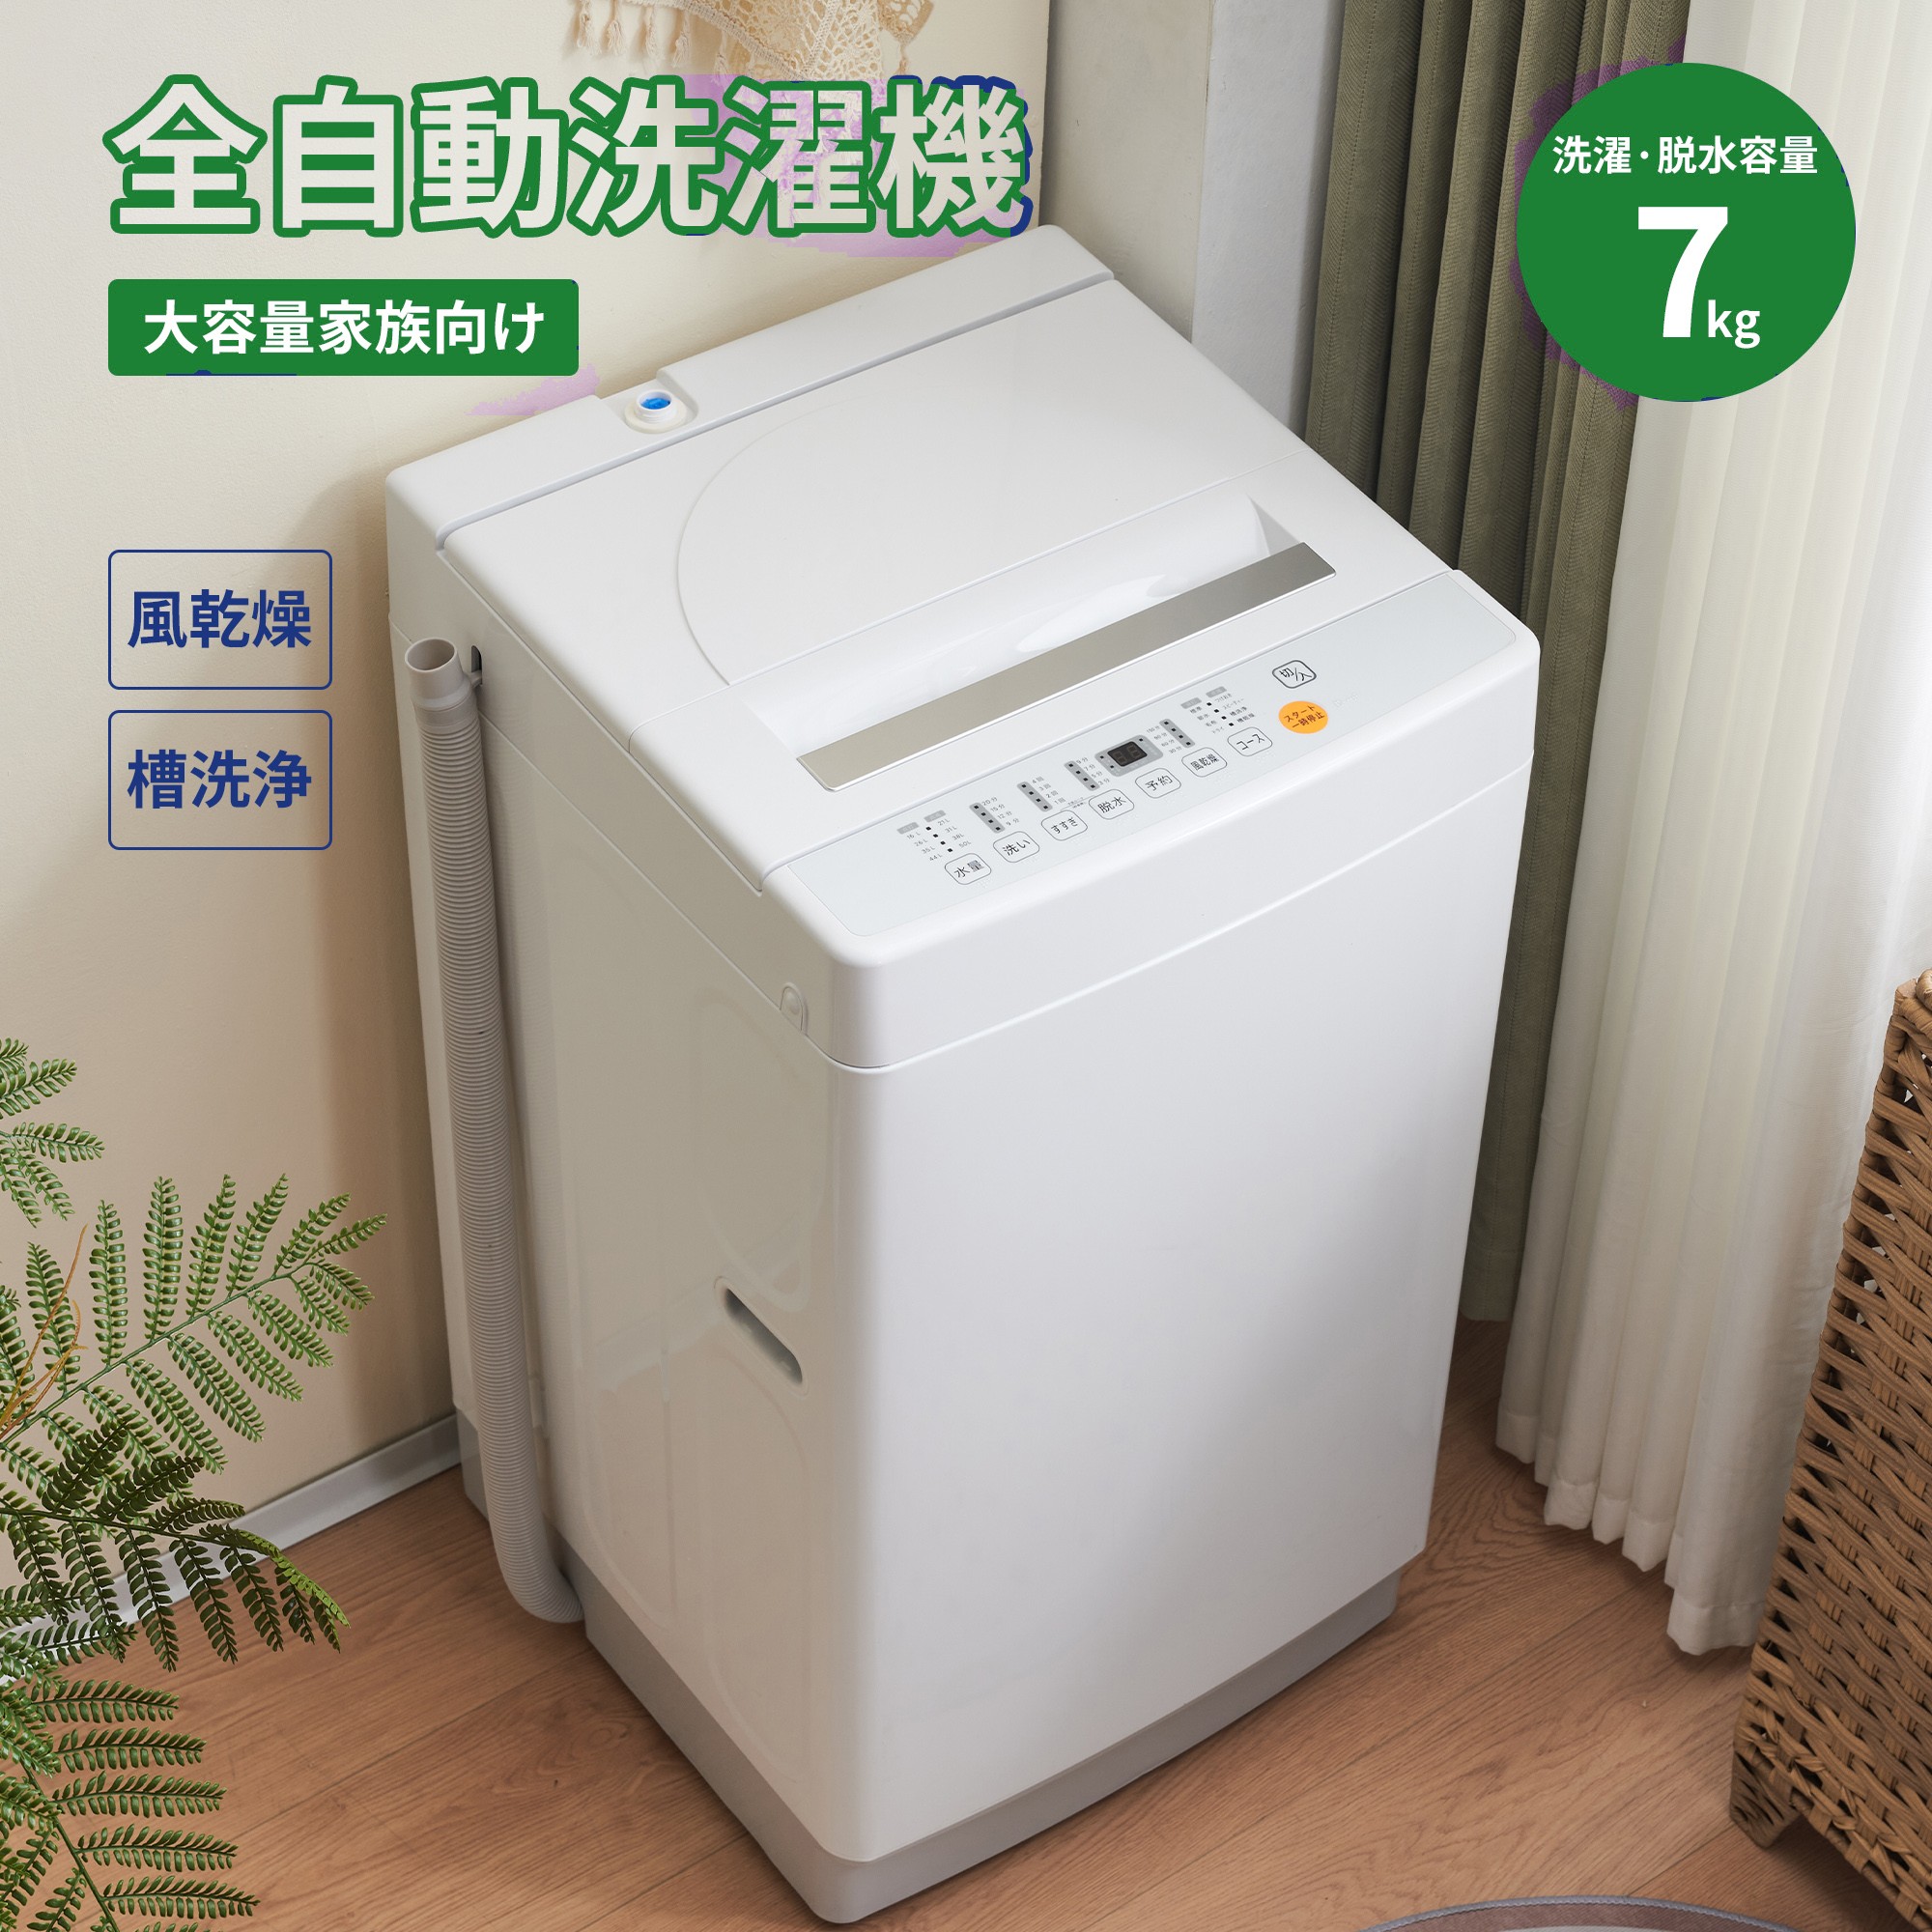 洗濯機 全自動洗濯機 7kg 縦型 7キロ キレイ タイマー コンパクト 一人暮らし 小型洗濯機 節電 ステンレス槽 まとめ洗い 縦型洗濯機 一年保証  送料無料